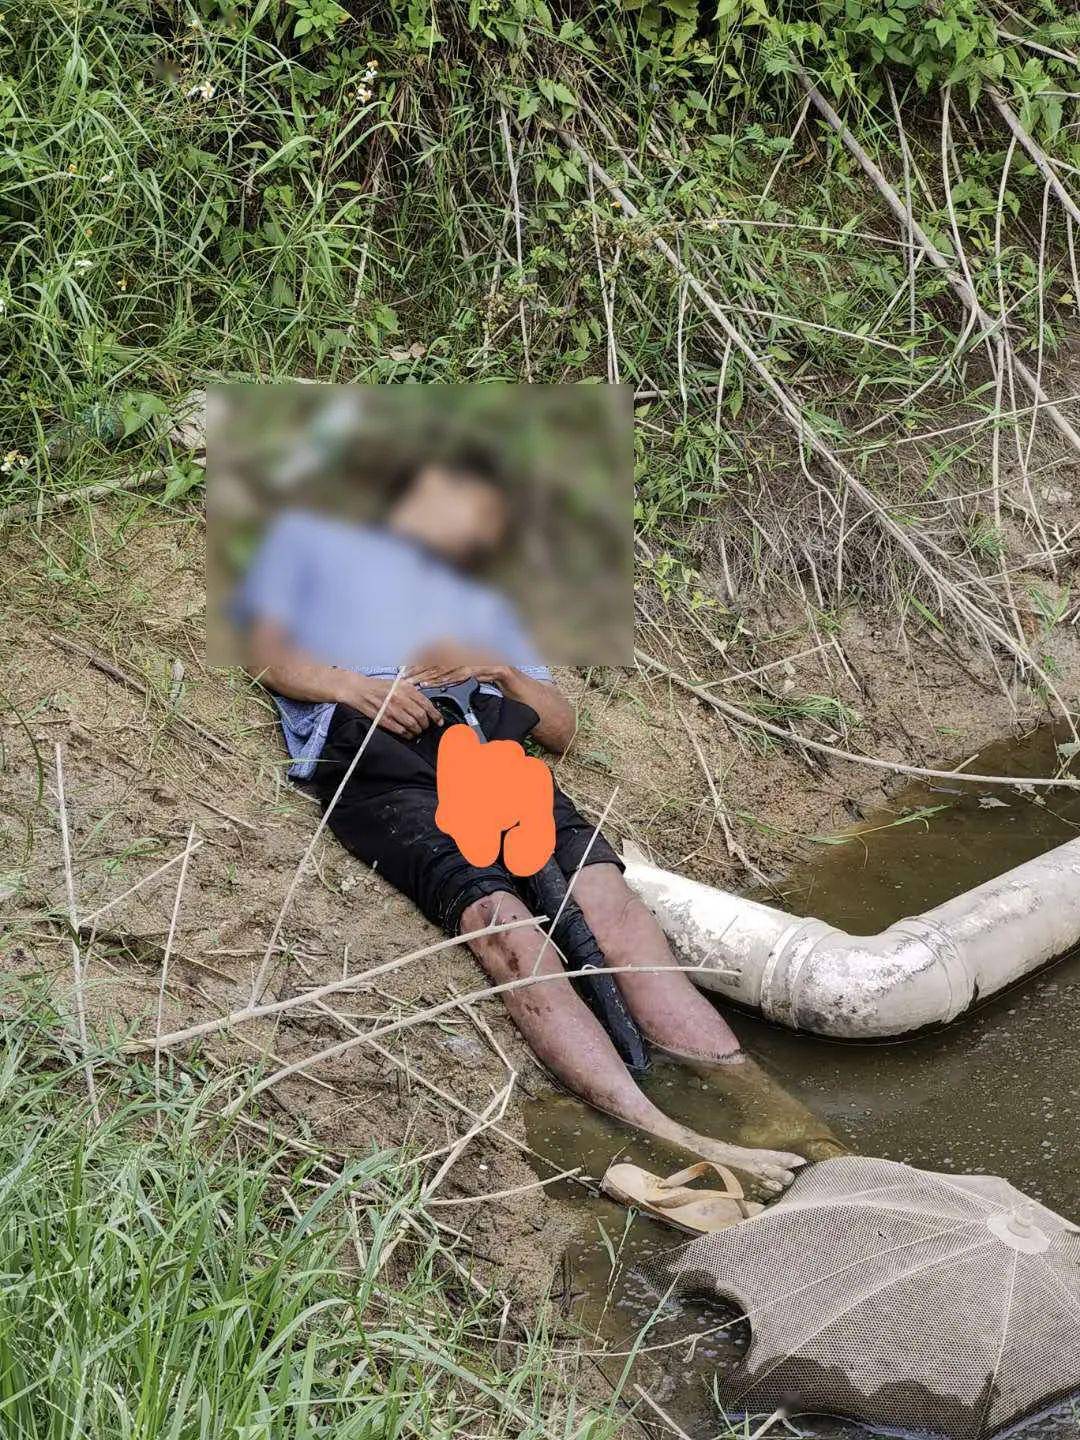 潮汕某水池旁发现一无名男尸手持黑伞急寻家属认尸